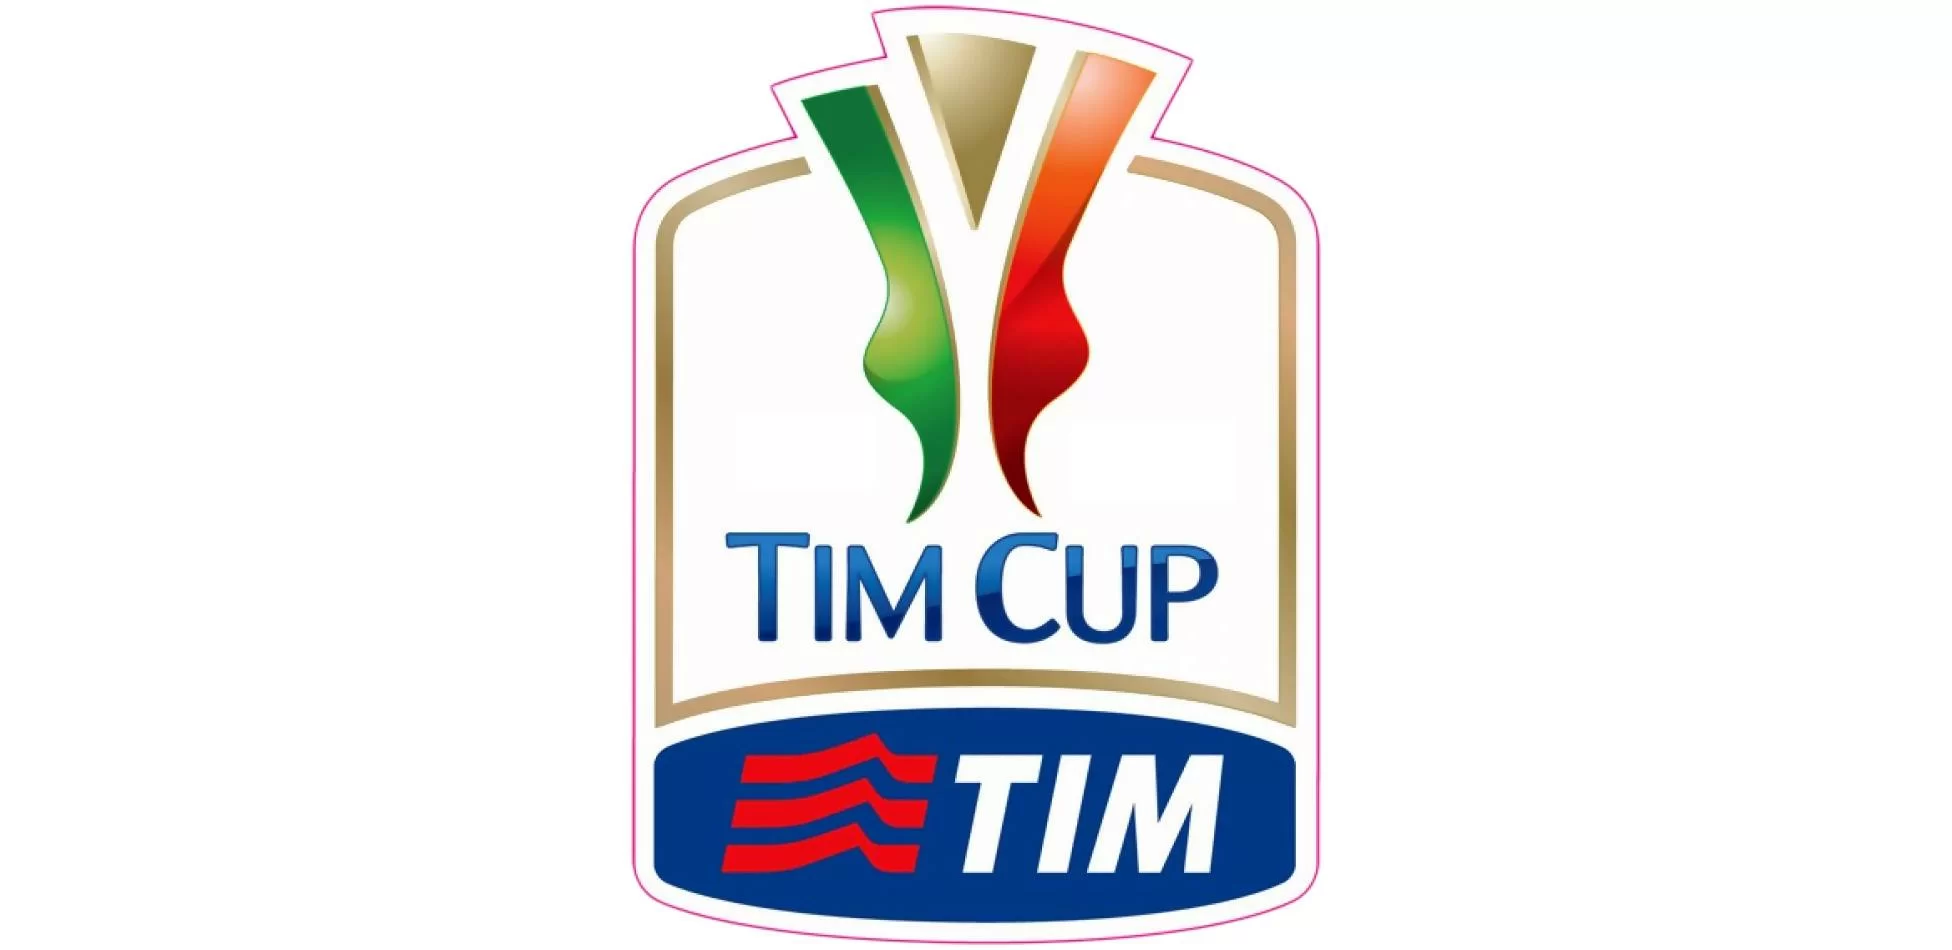 Coppa Italia: Milan in campo il 15 Agosto a San Siro. Ecco i possibili avversari